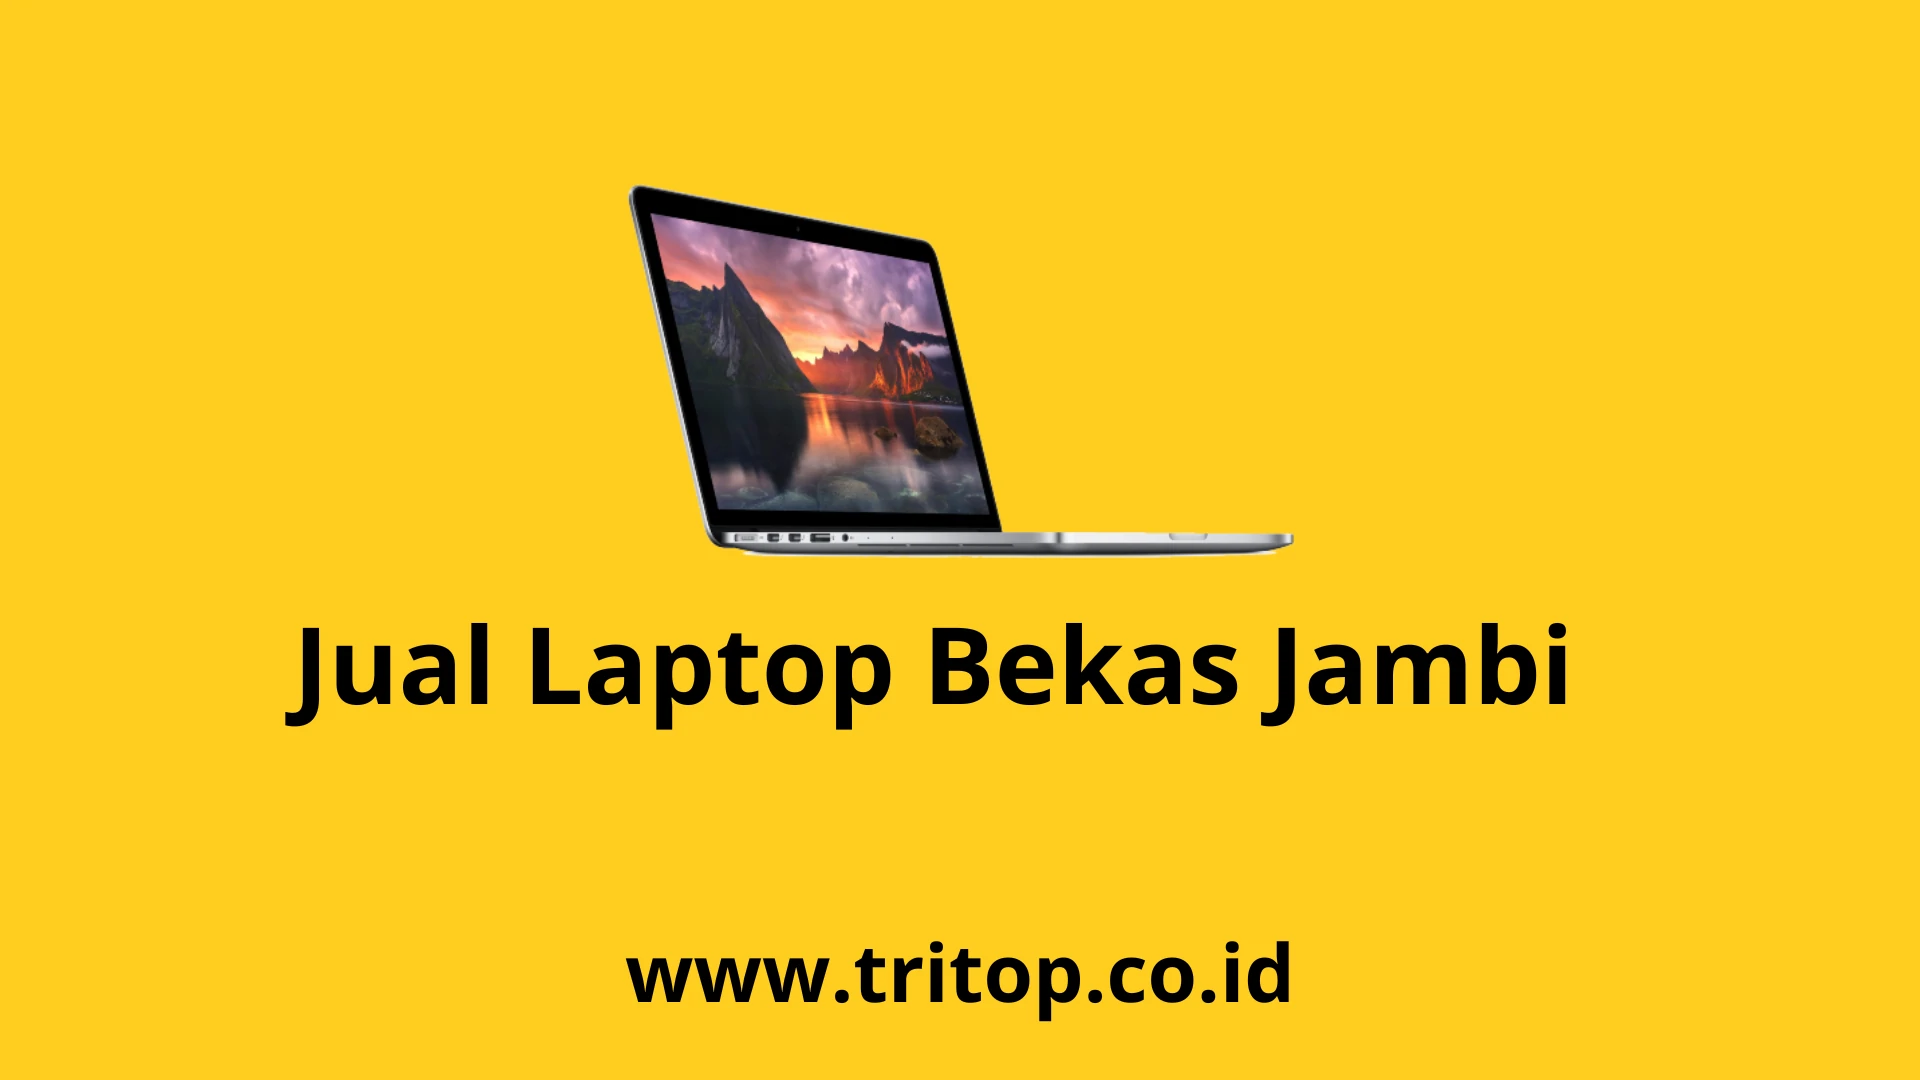 Jual Laptop Bekas Jambi